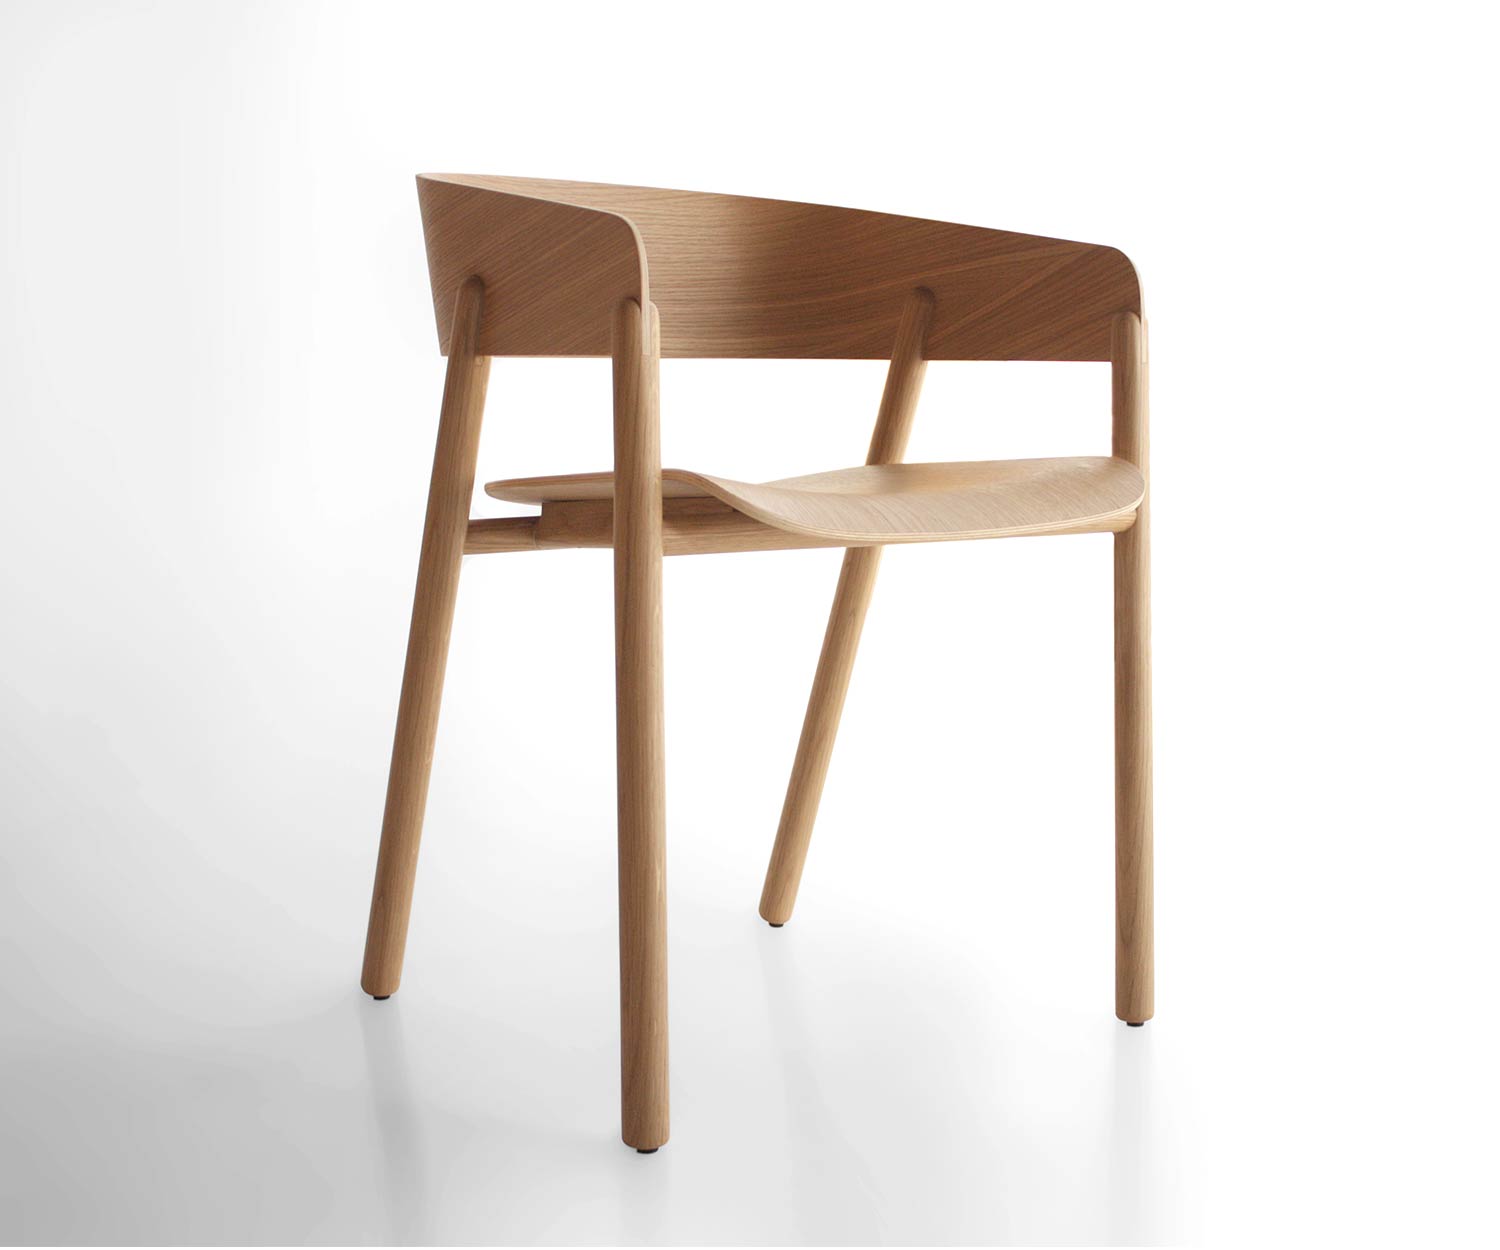 Punt Mava designer oak chair with veneered armrests